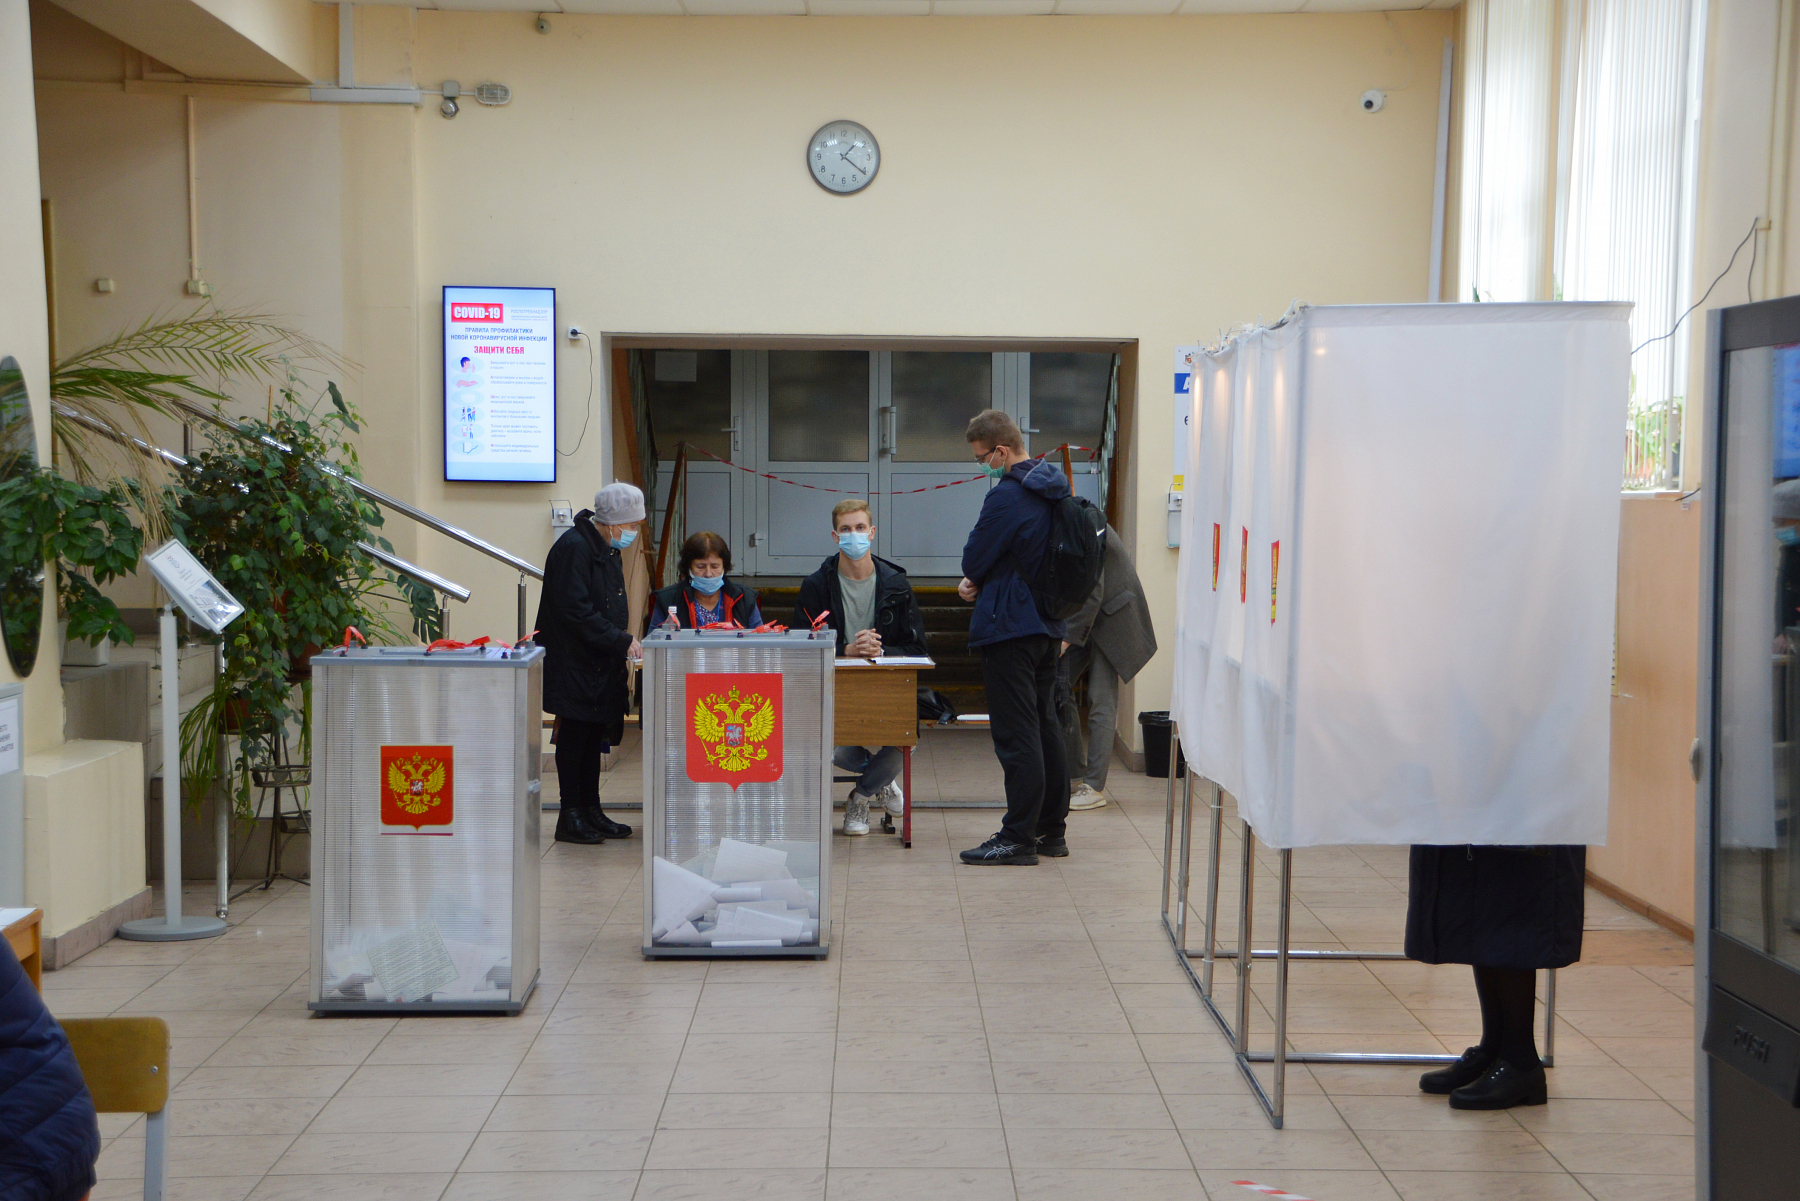 Сегодня первый день голосования. Избиратели. Выборы Тверь. Наблюдатели на выборах фото. Уик 876.